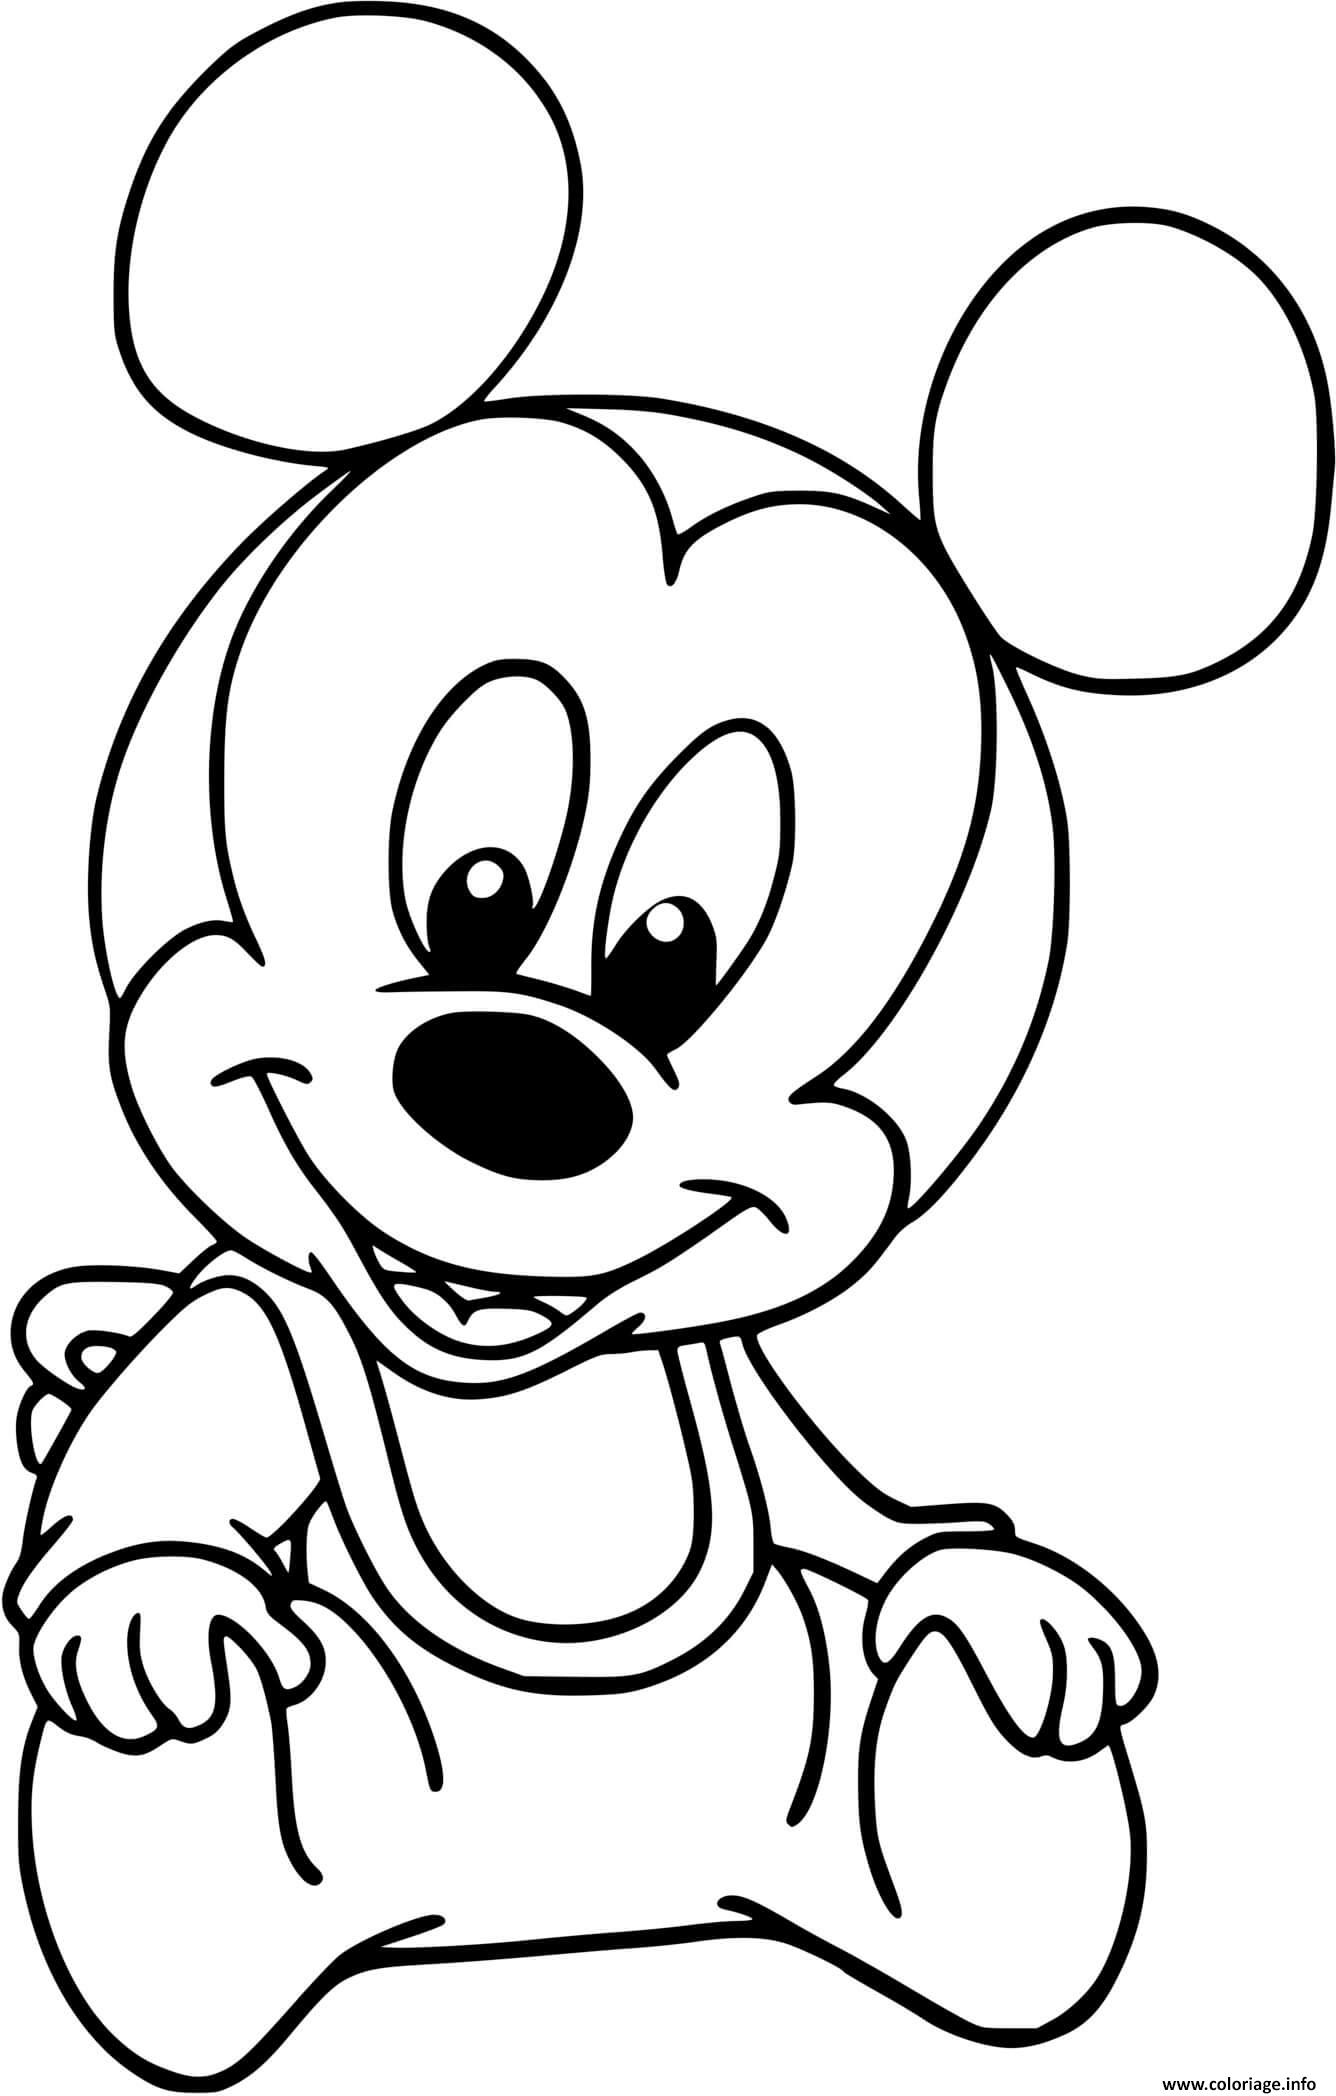 Dessin mickey mouse bebe Coloriage Gratuit à Imprimer